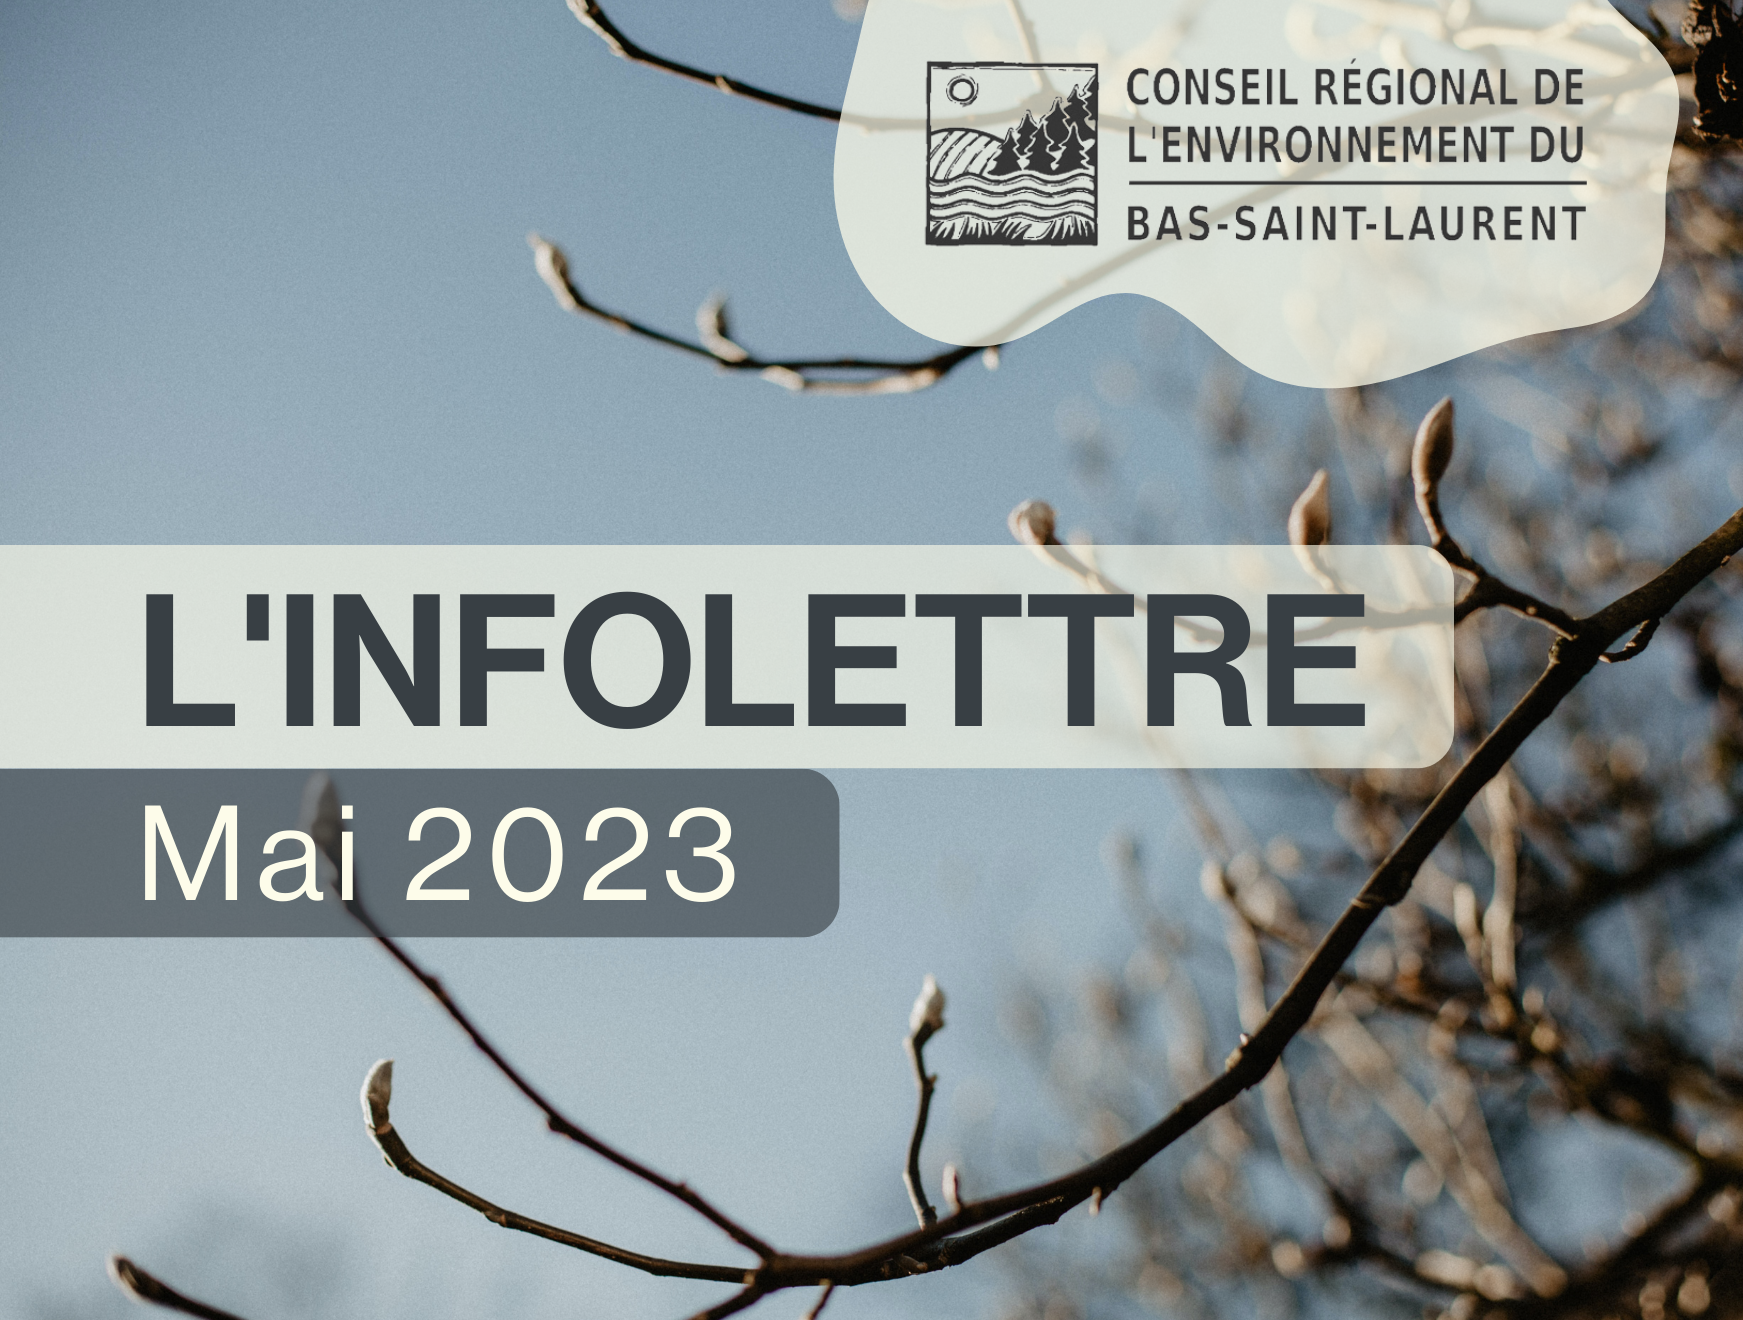 Infolettre de mai du Conseil régional de l’environnement du Bas-Saint-Laurent